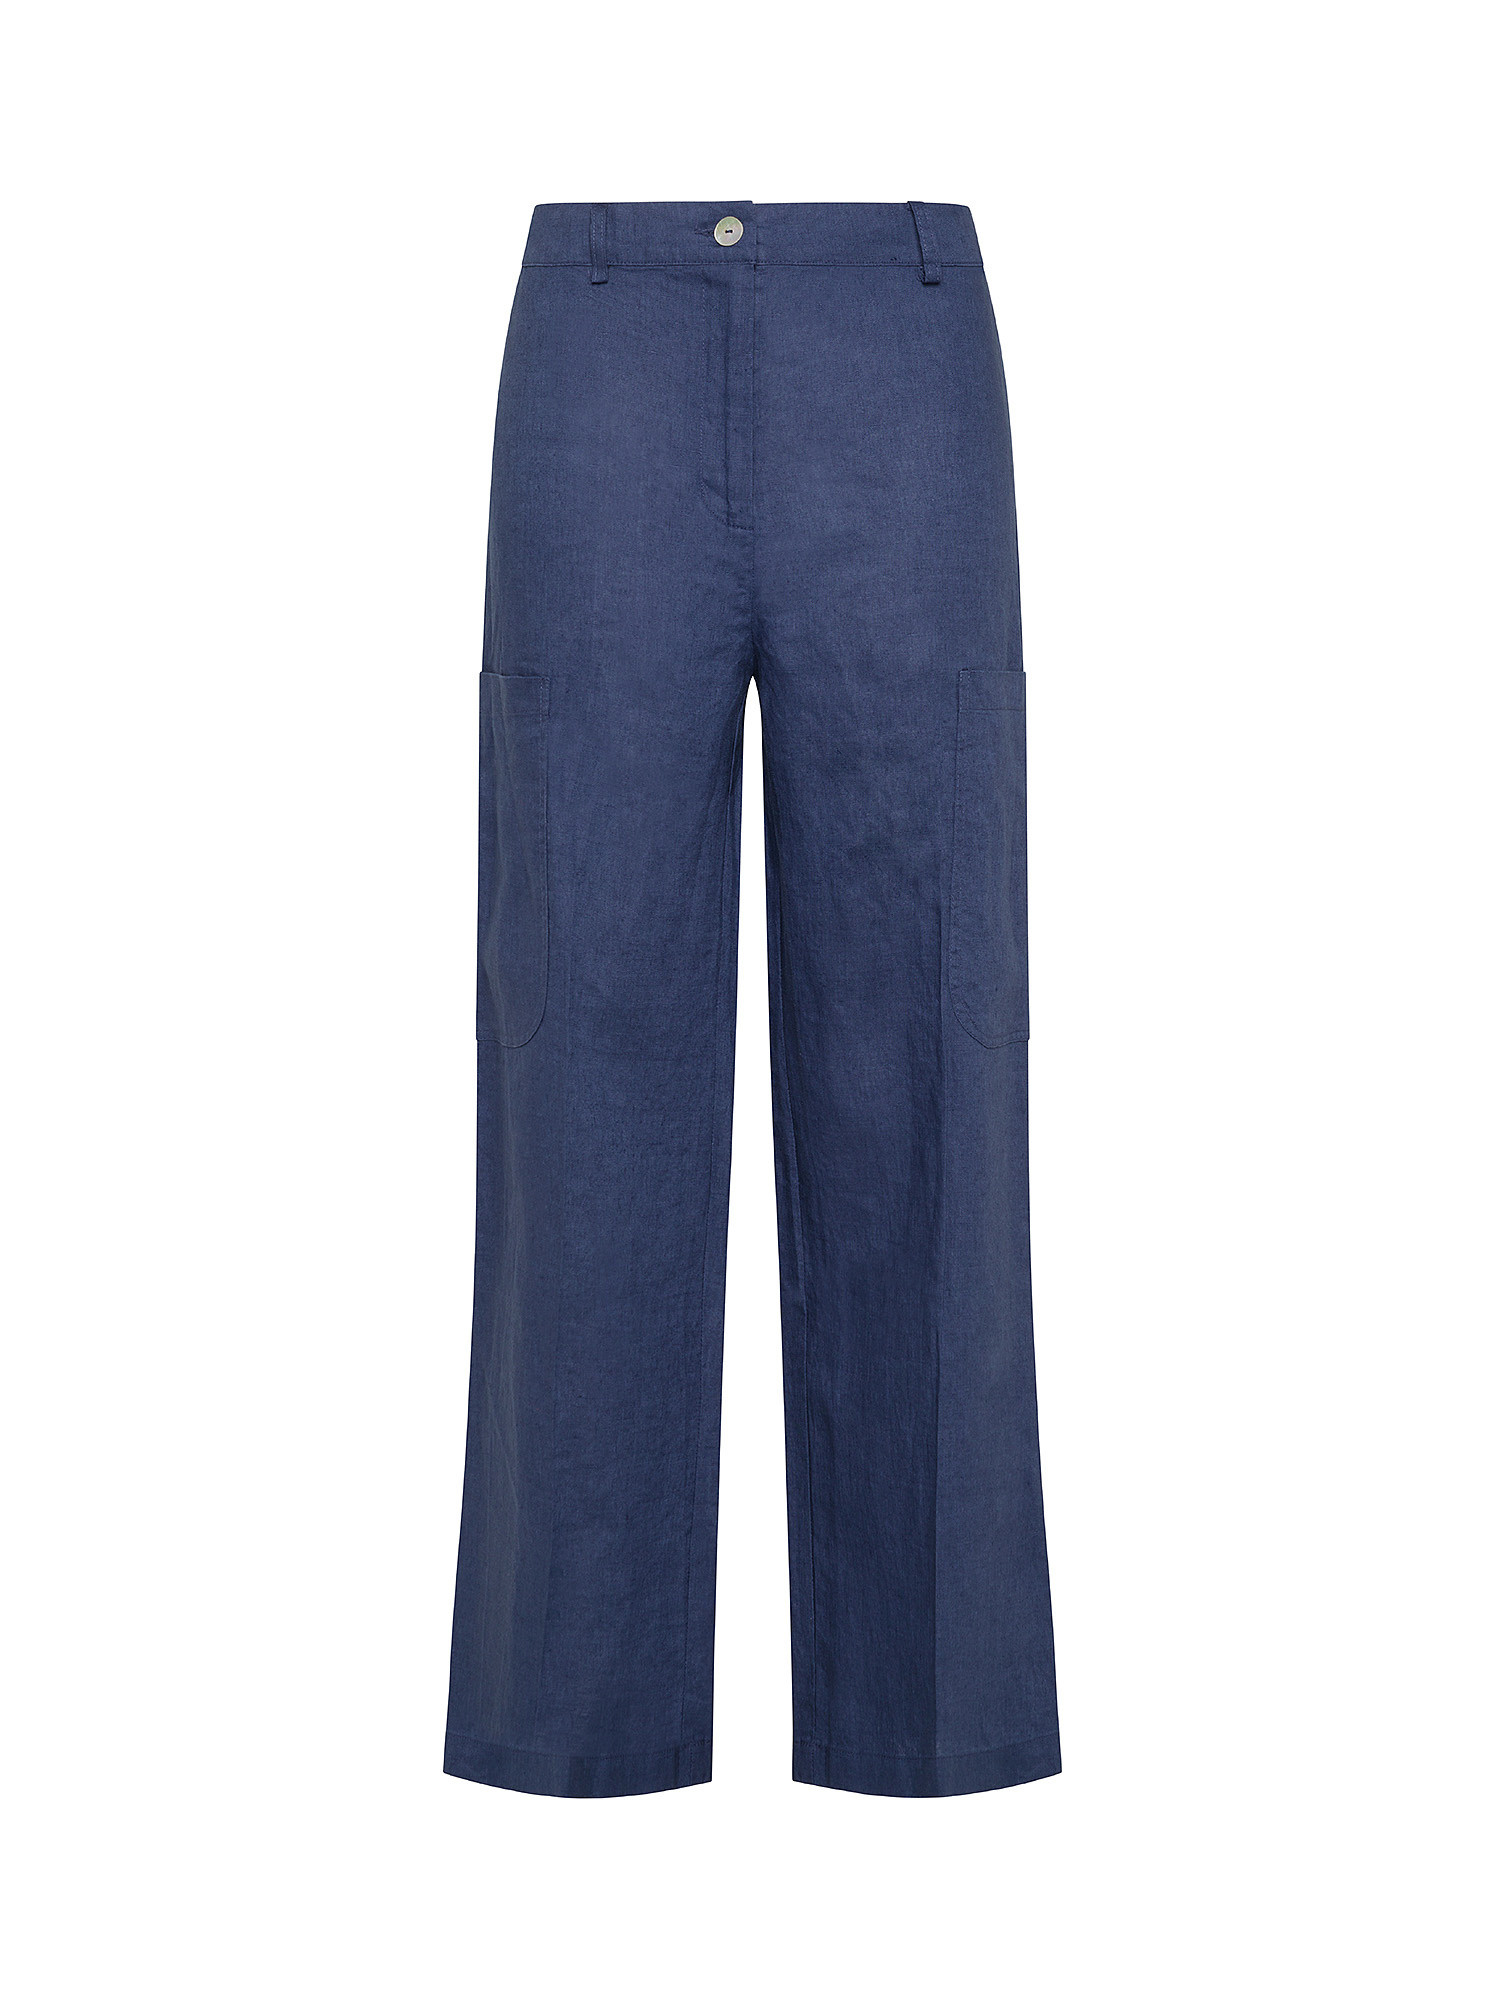 Koan - Pantaloni cargo in lino, Blu, large image number 0